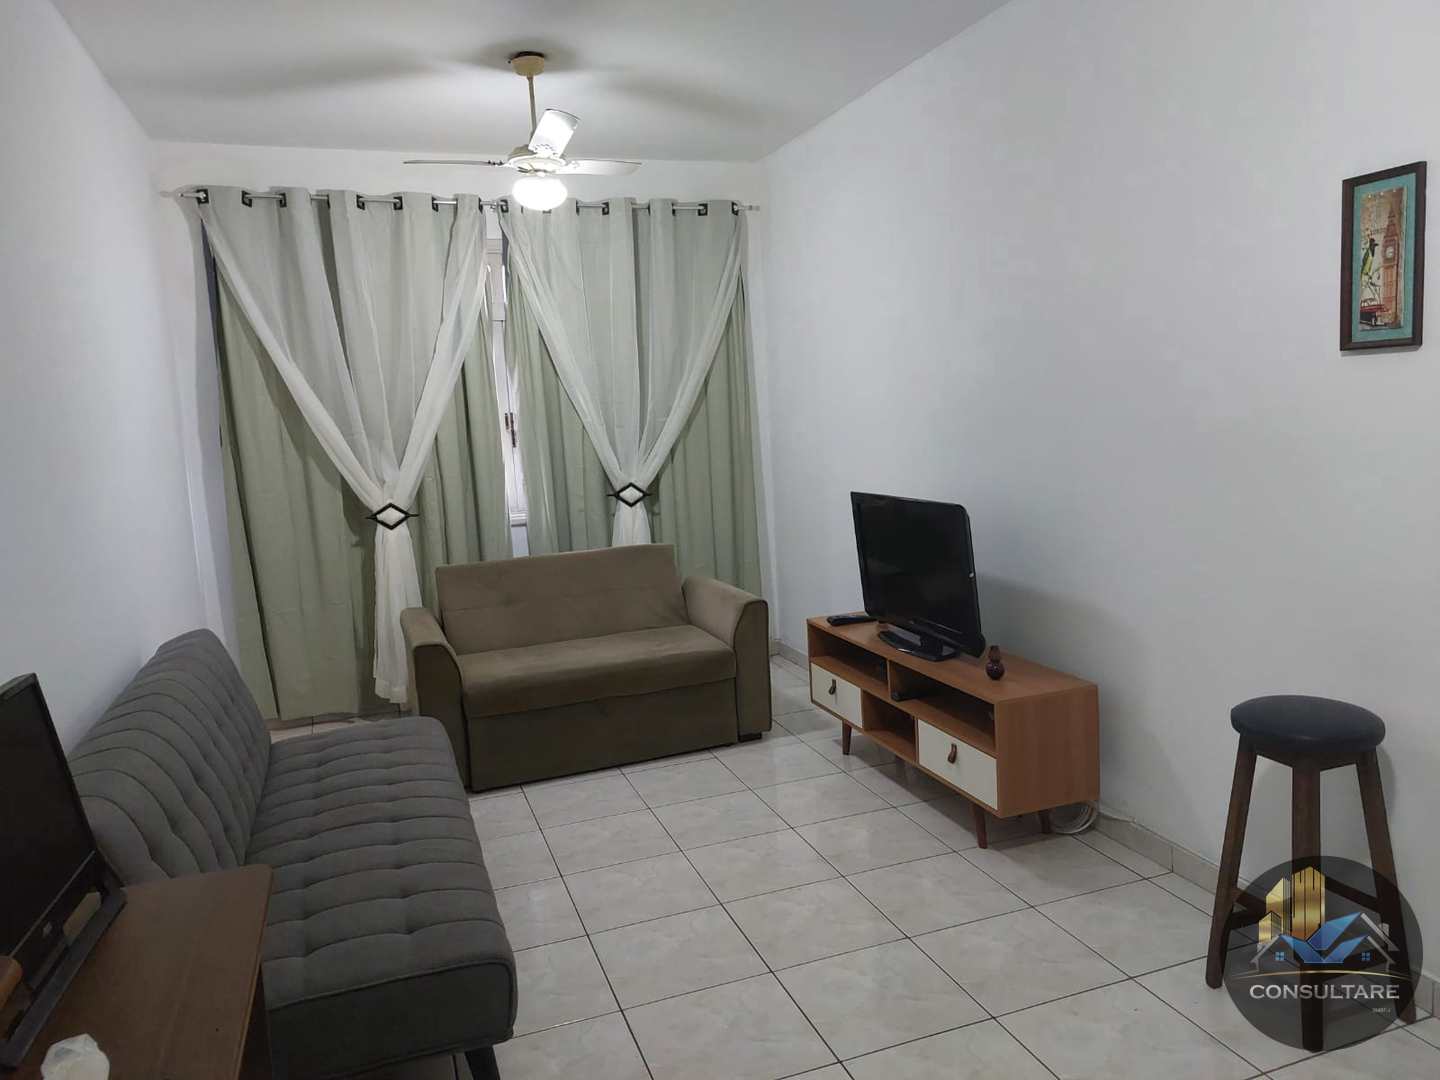 Apartamento com 1 dorm, Itararé, São Vicente, Cod: 23797, GER